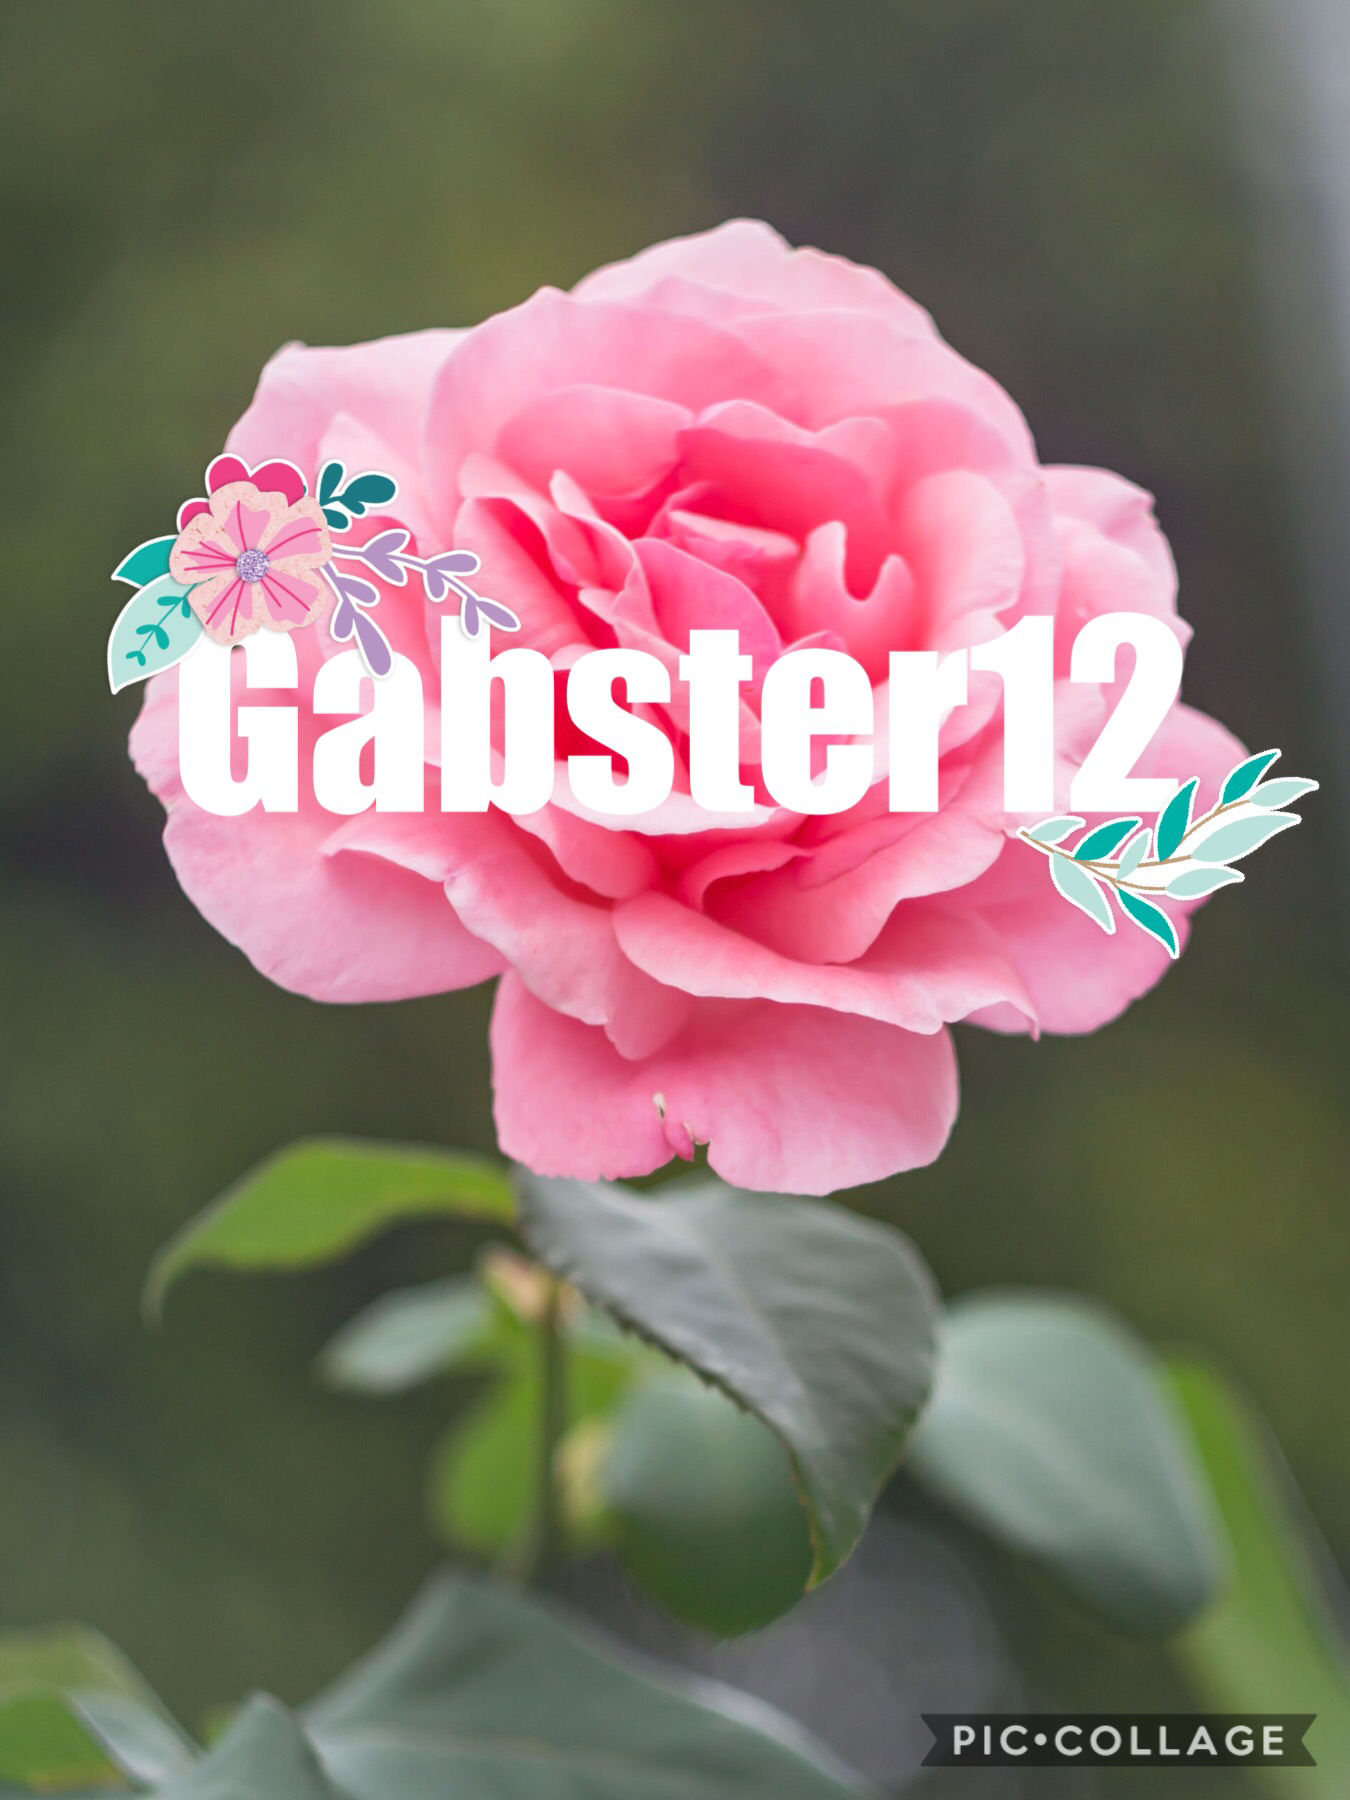 For gabster12 logo comp